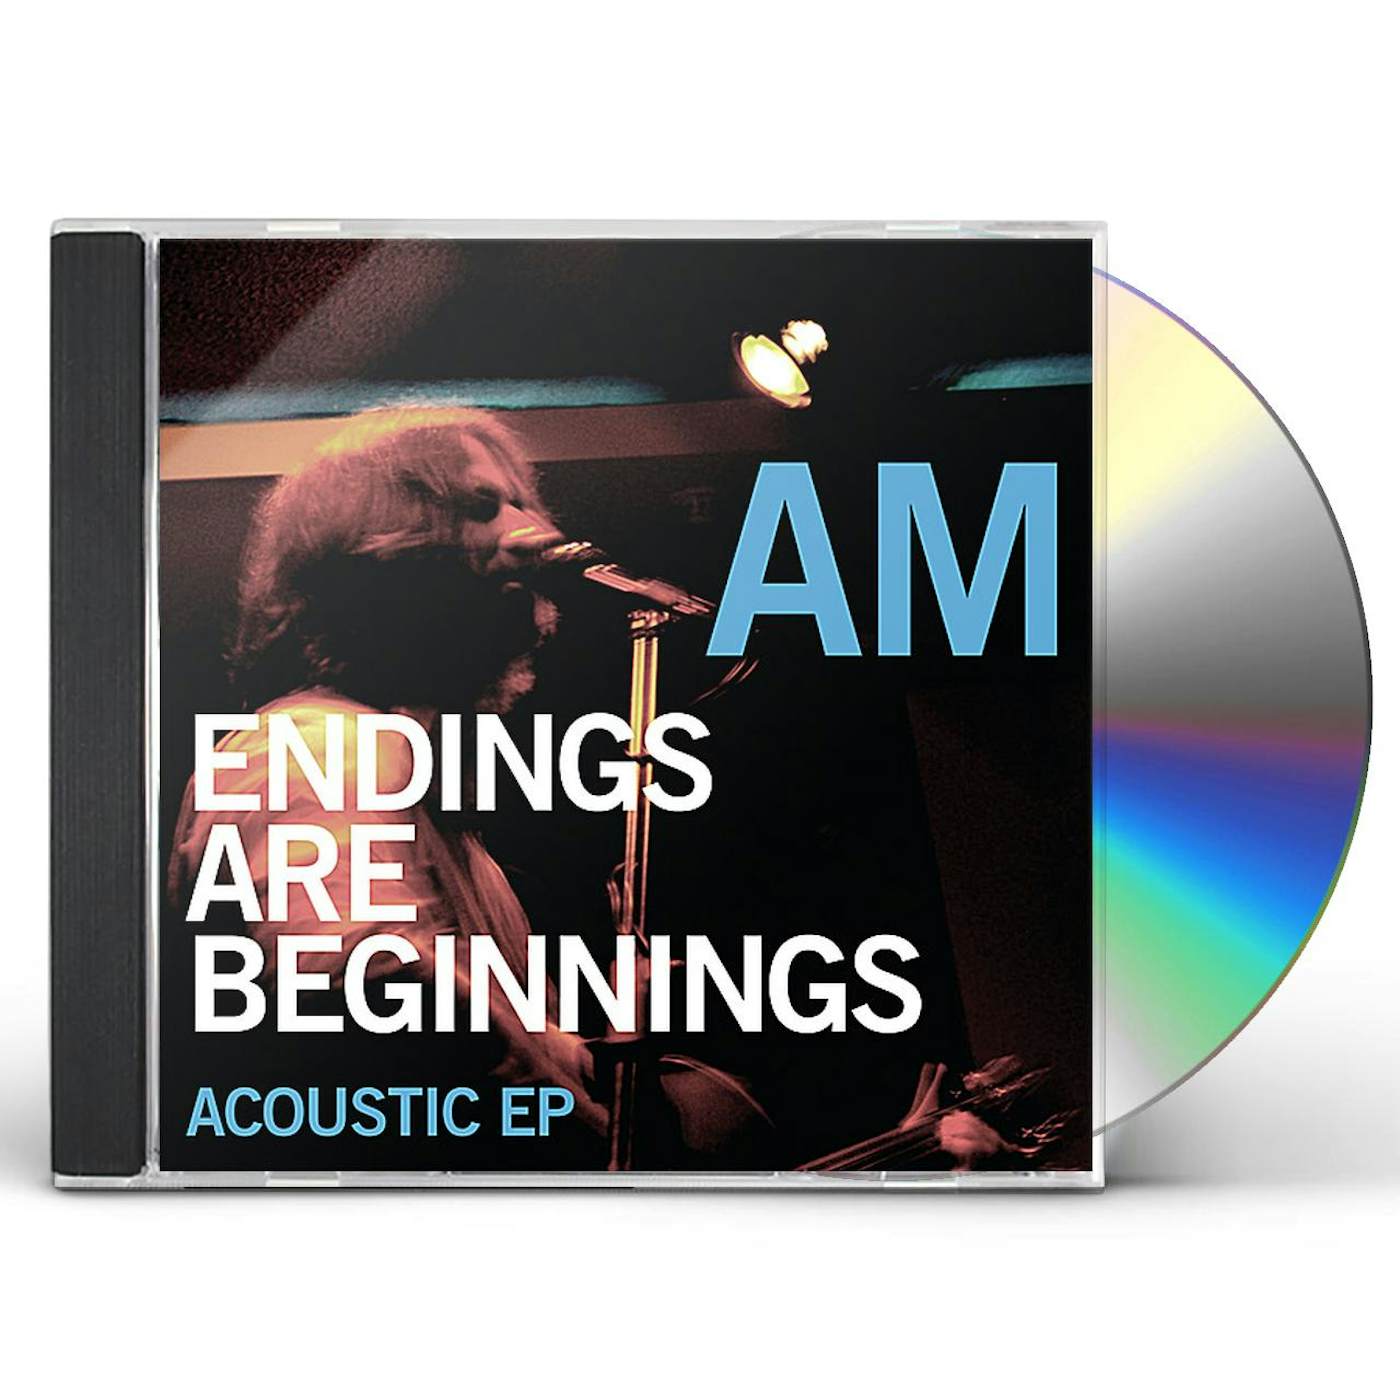 AM ENDINGS ARE BEGINNINGS ACOUSTIC EP CD